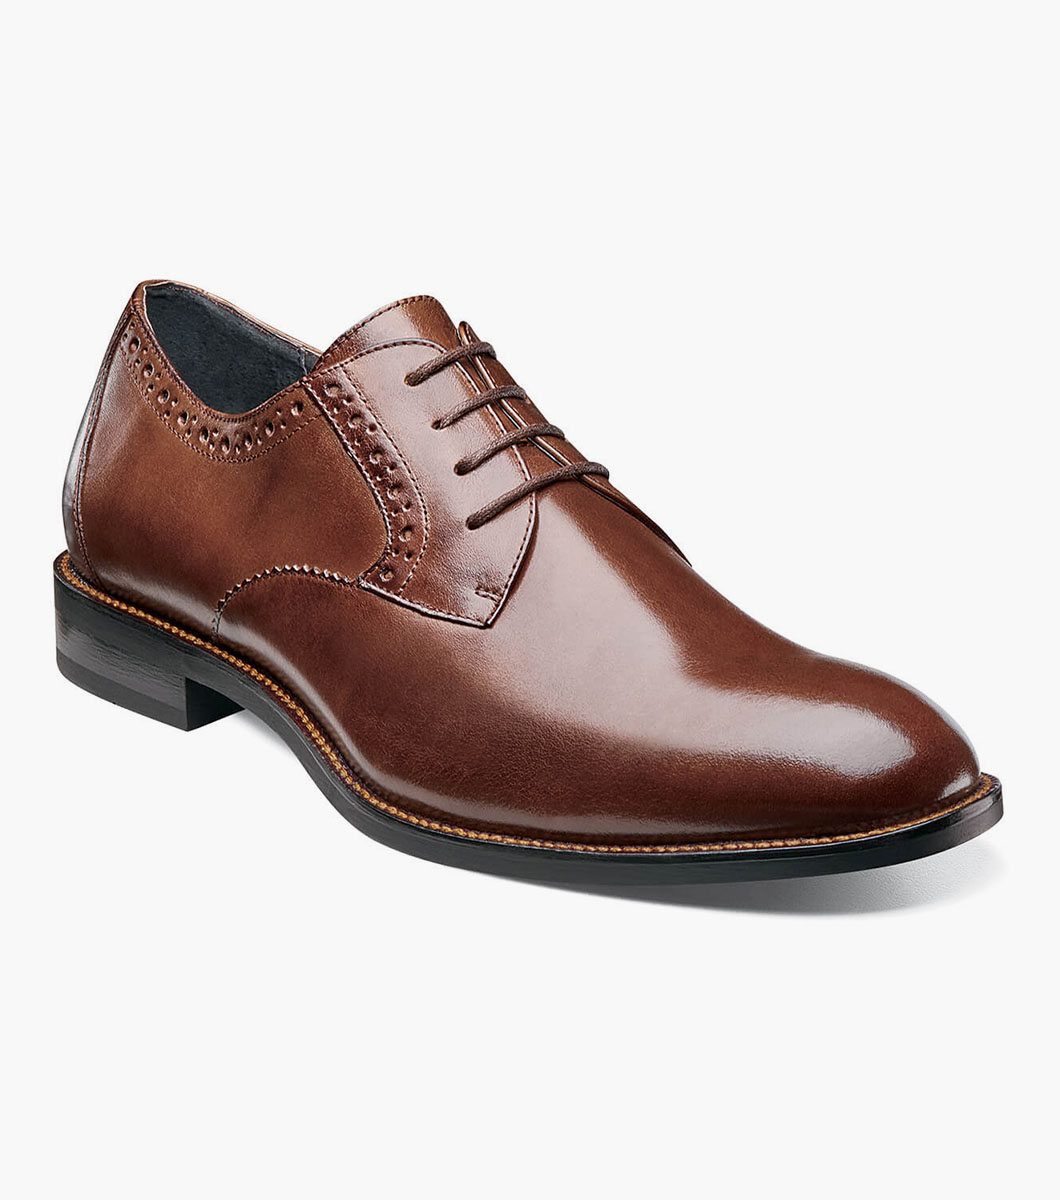 Men's Dress Shoes | Cognac Plain Toe Oxford | Stacy Adams Graham